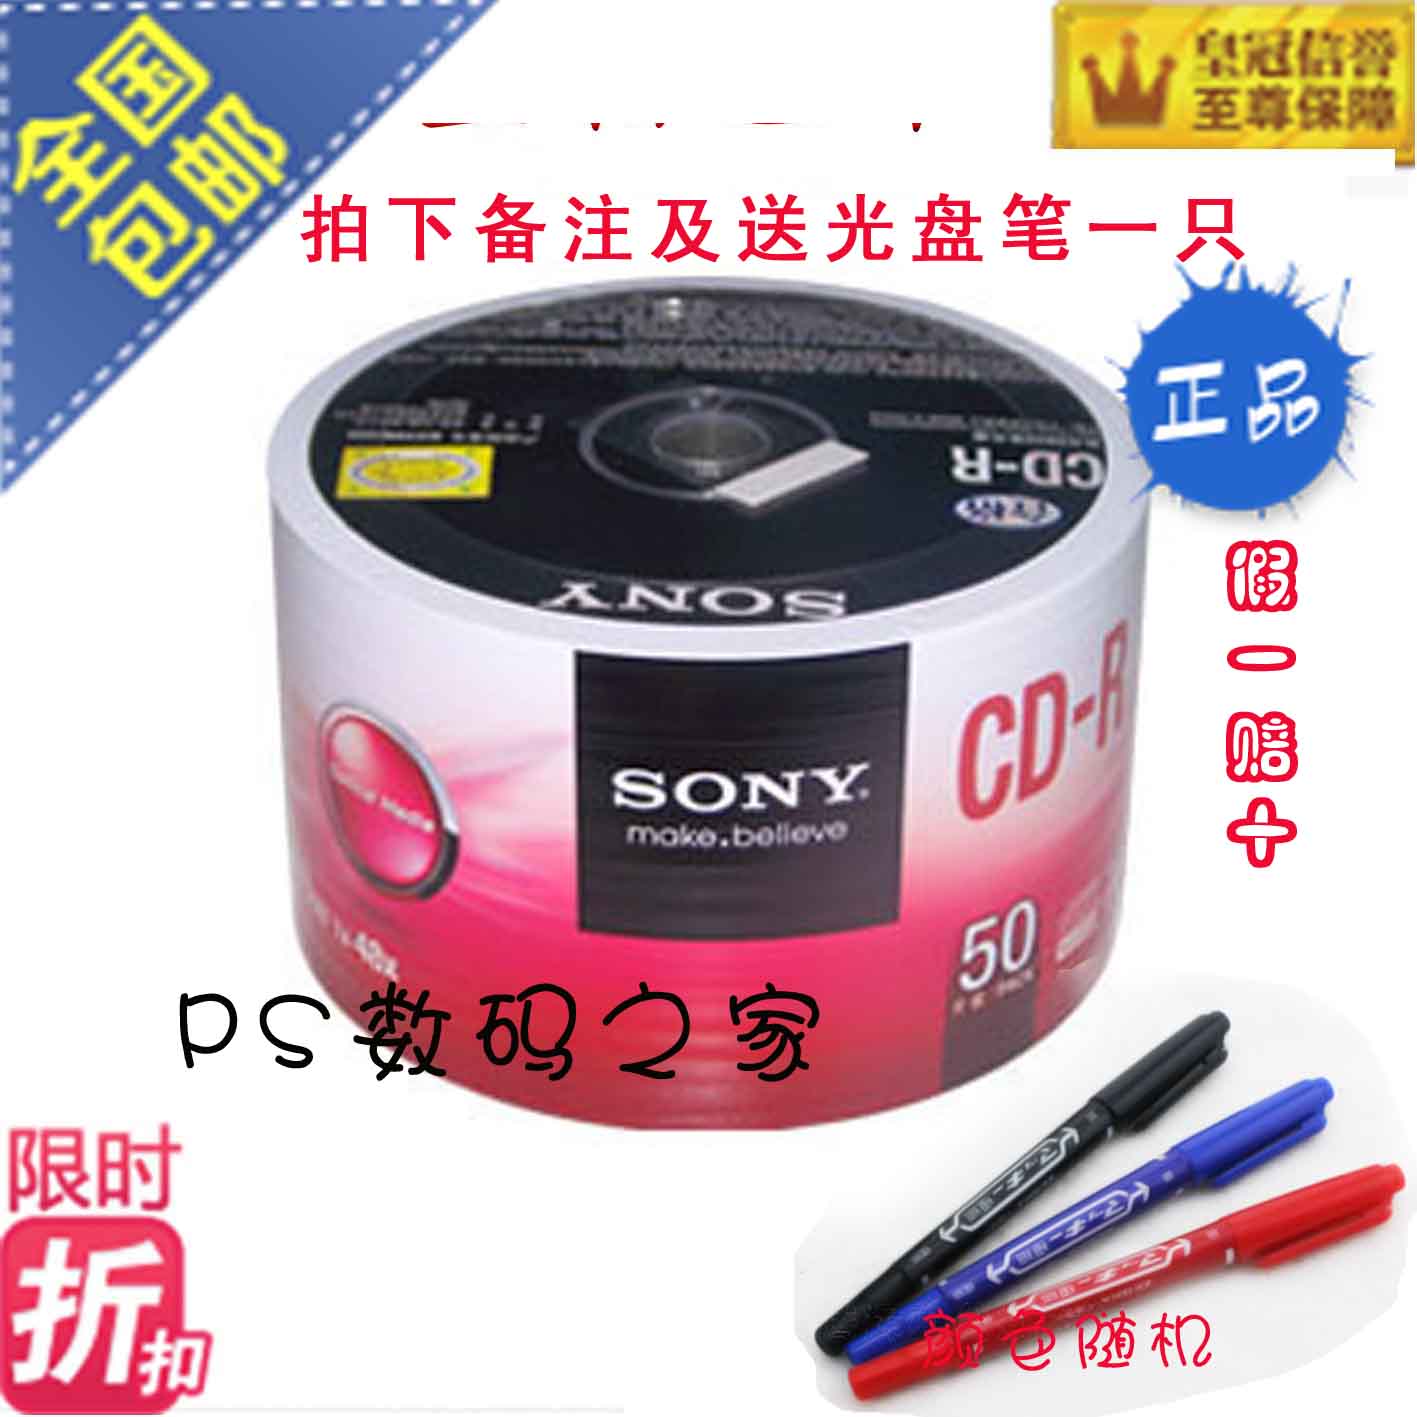 包邮索尼Sony空白刻录光盘 CD-R 48X 700M 50片环保装 cd刻录盘